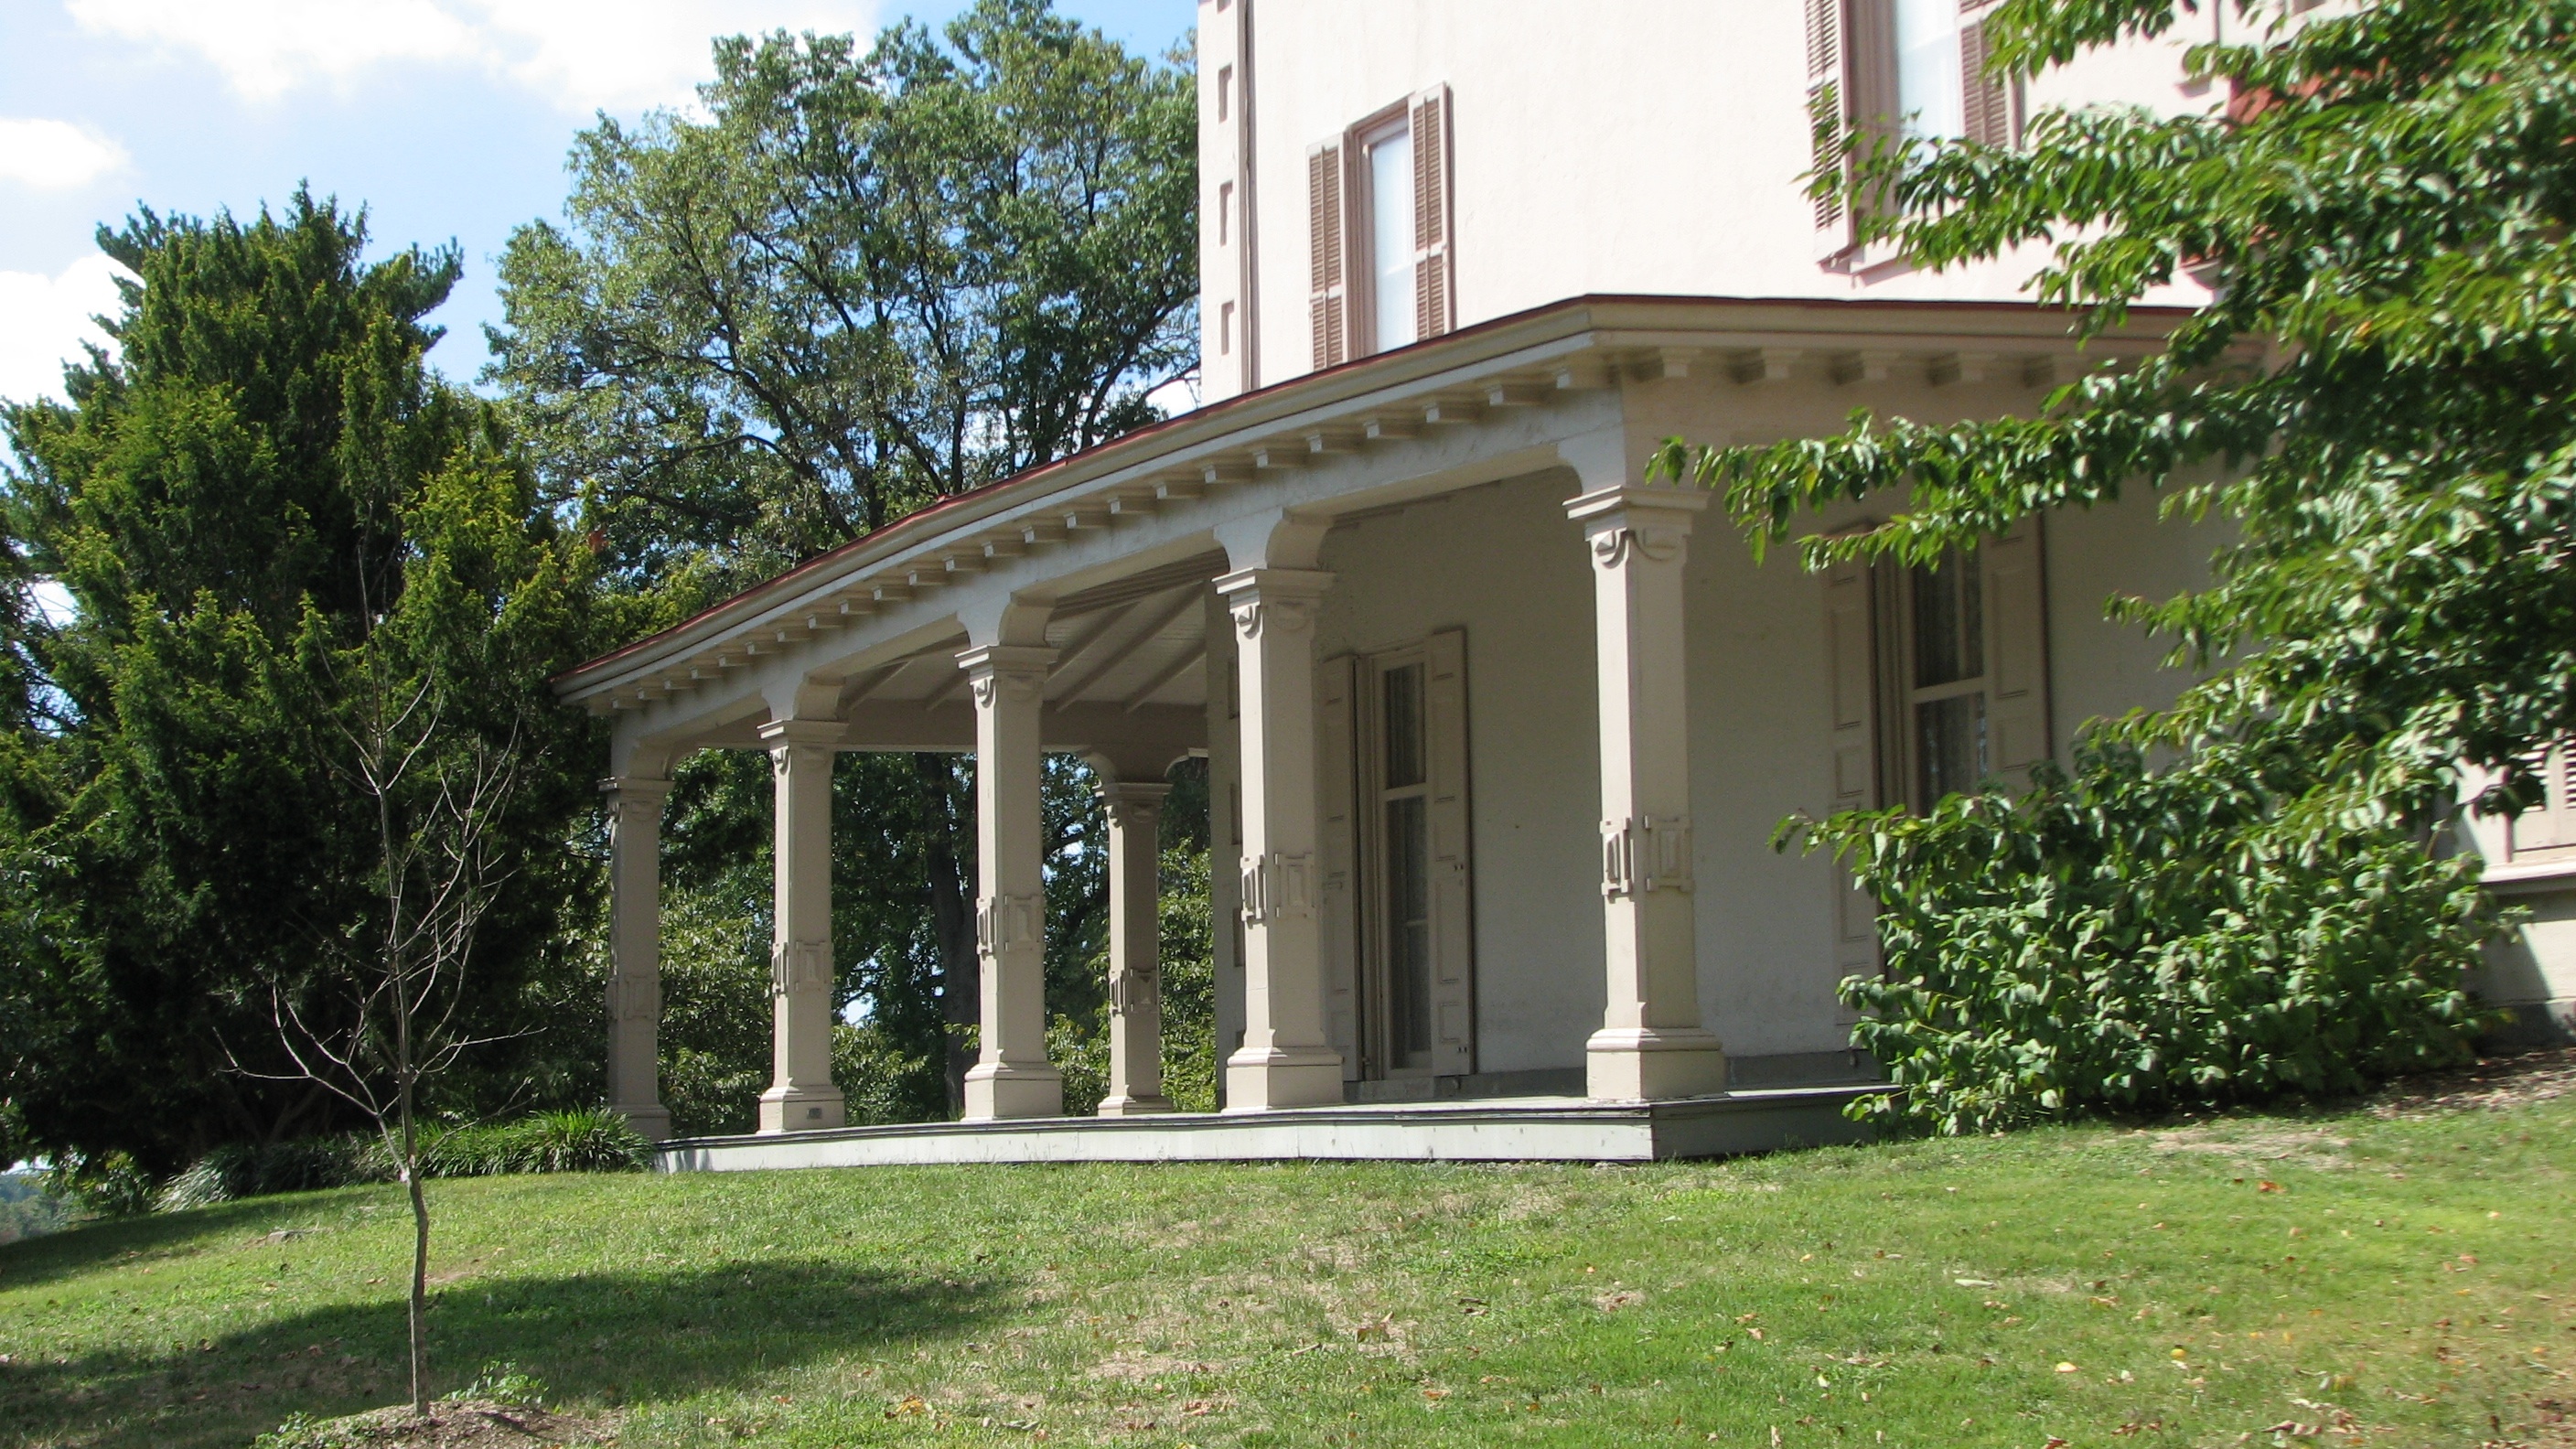 A grand veranda wraps around the Ryerss mansion.